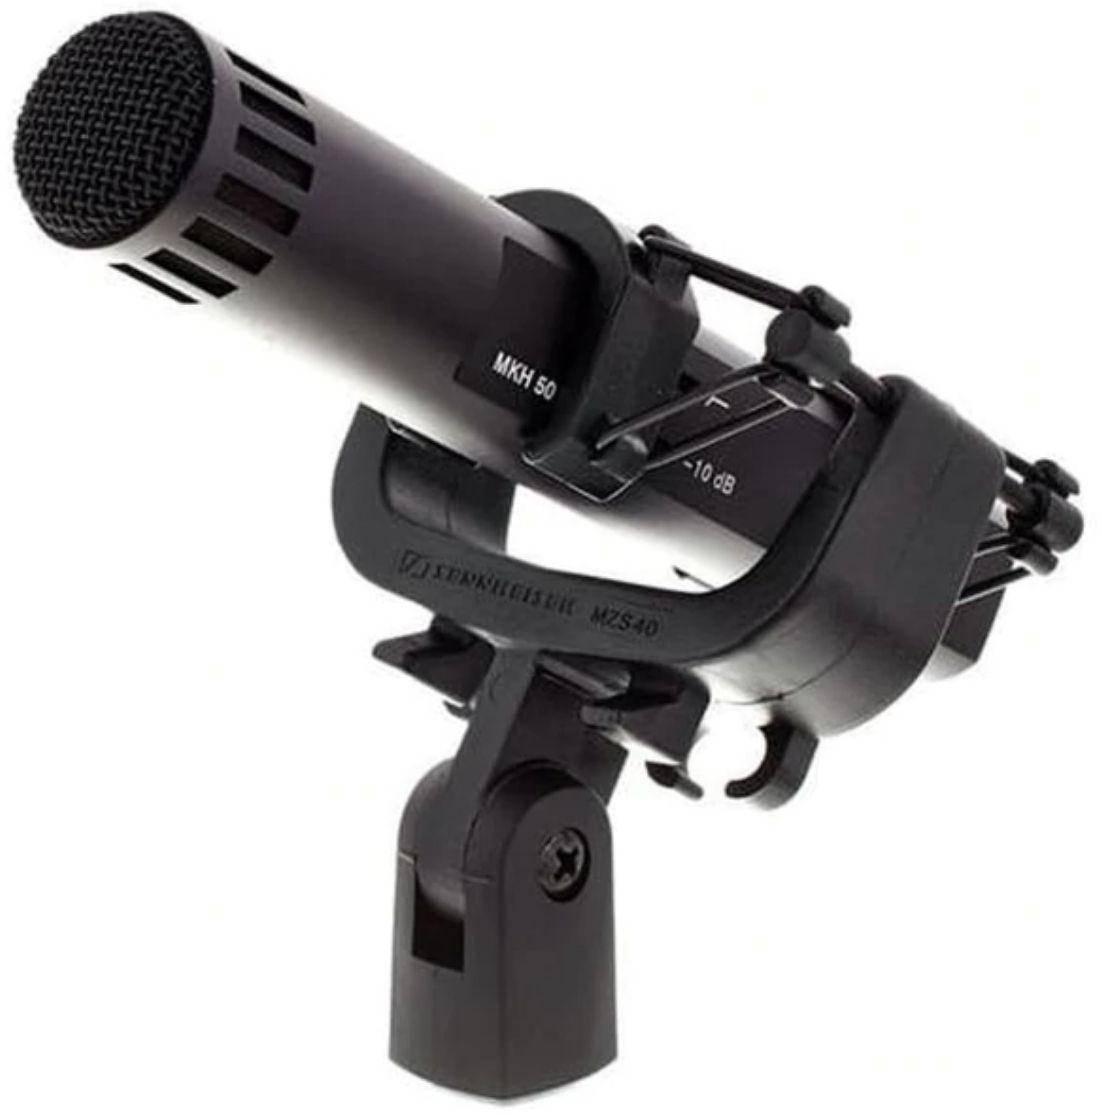 Sennheiser MKH50 P48 Super-Cardioid Condenser Microphone zoom image